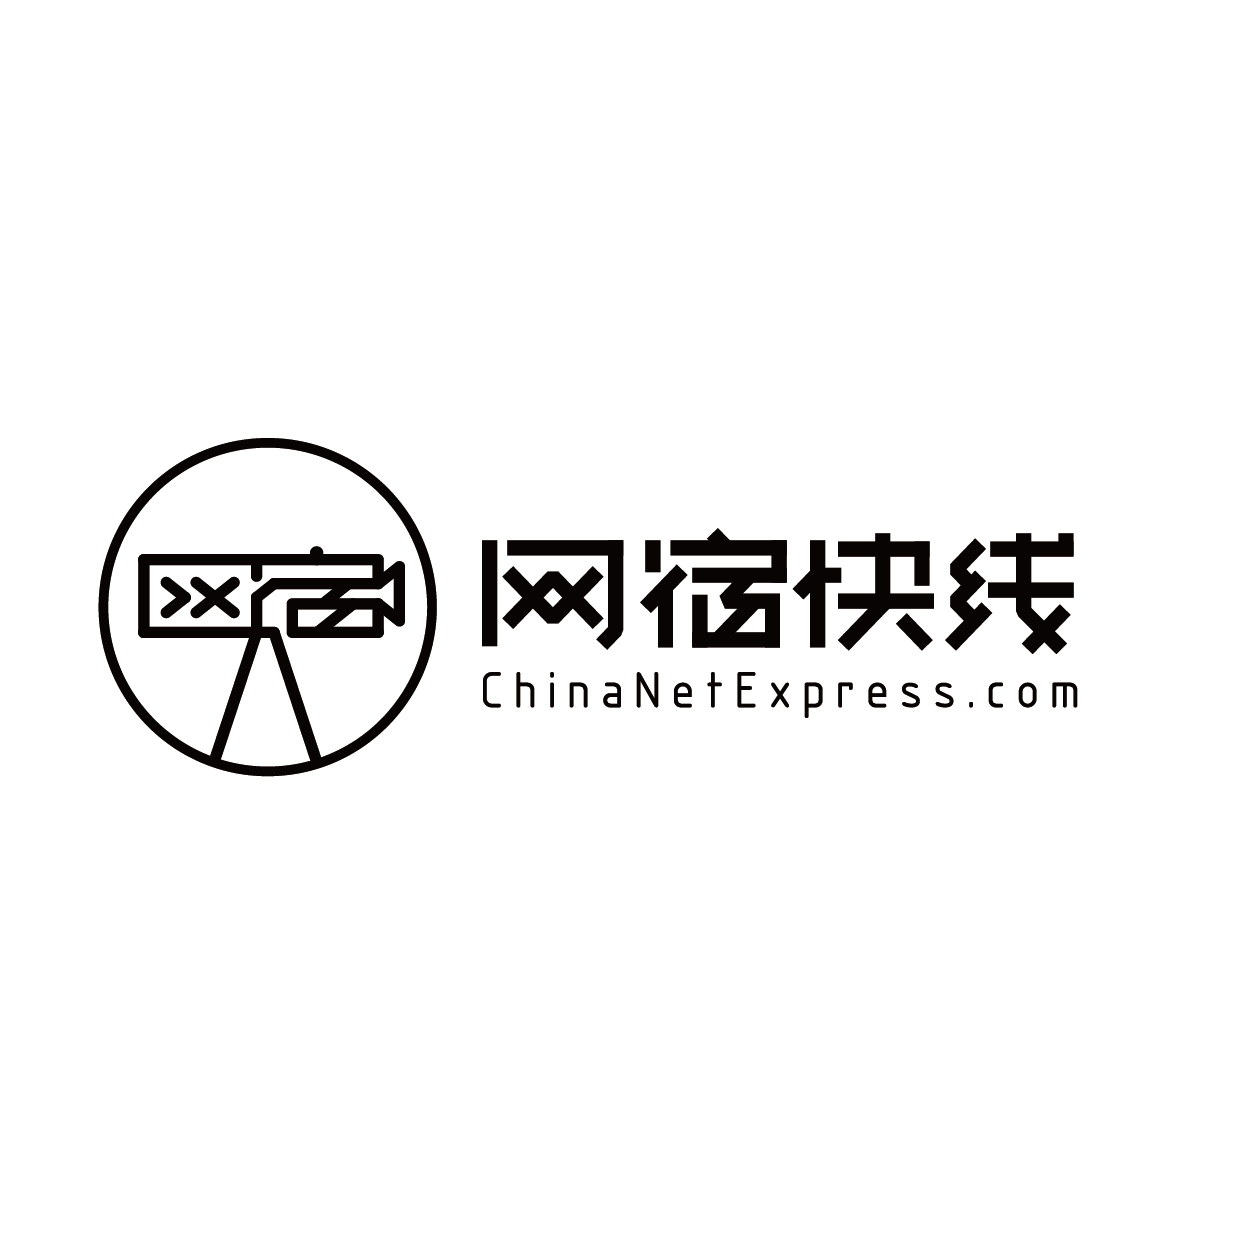 北京网宿快线科技有限公司